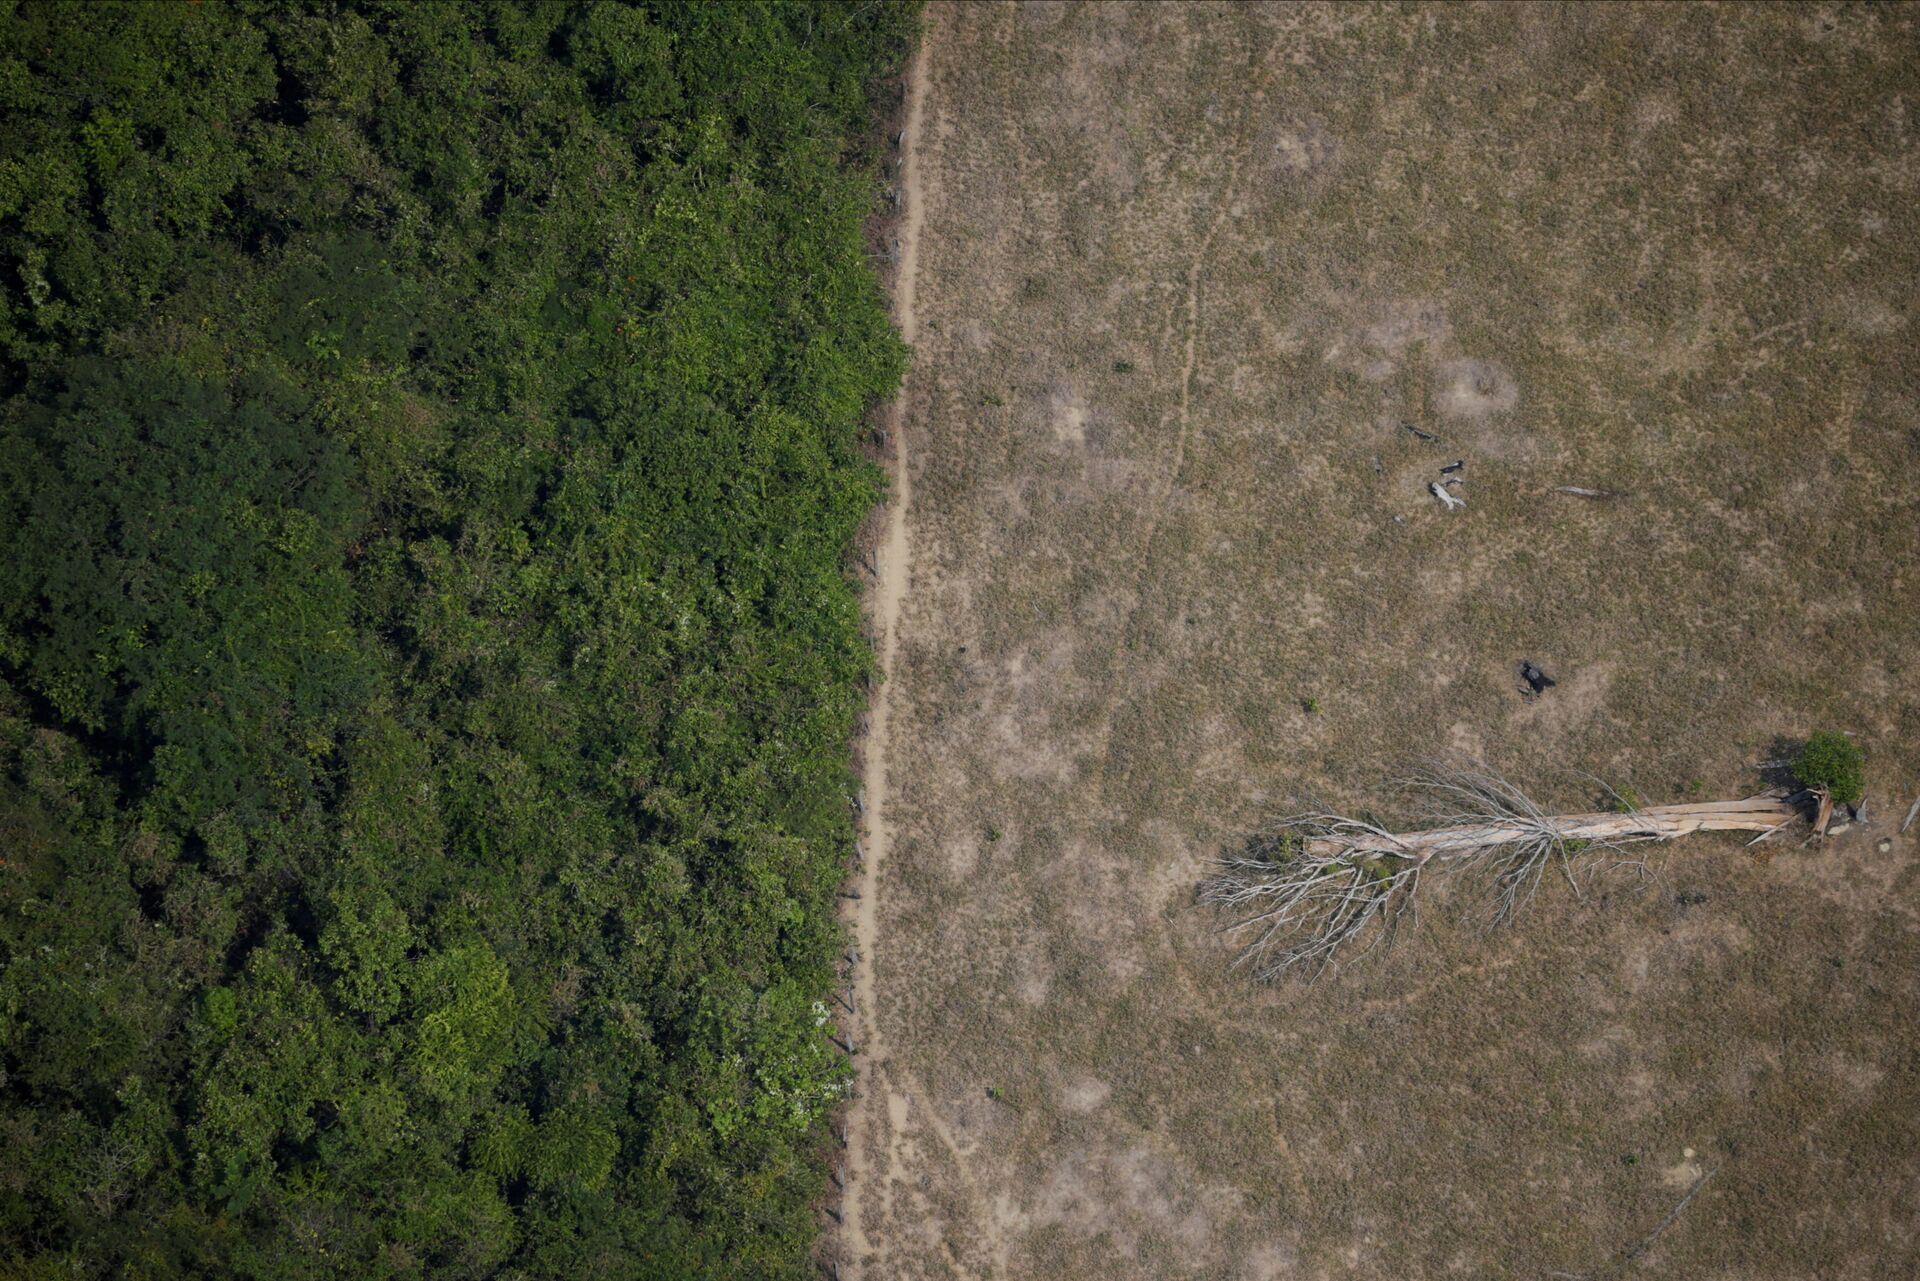 Biólogo diz que florestas não destinadas ficam vulneráveis à grilagem na Amazônia - Sputnik Brasil, 1920, 14.05.2021